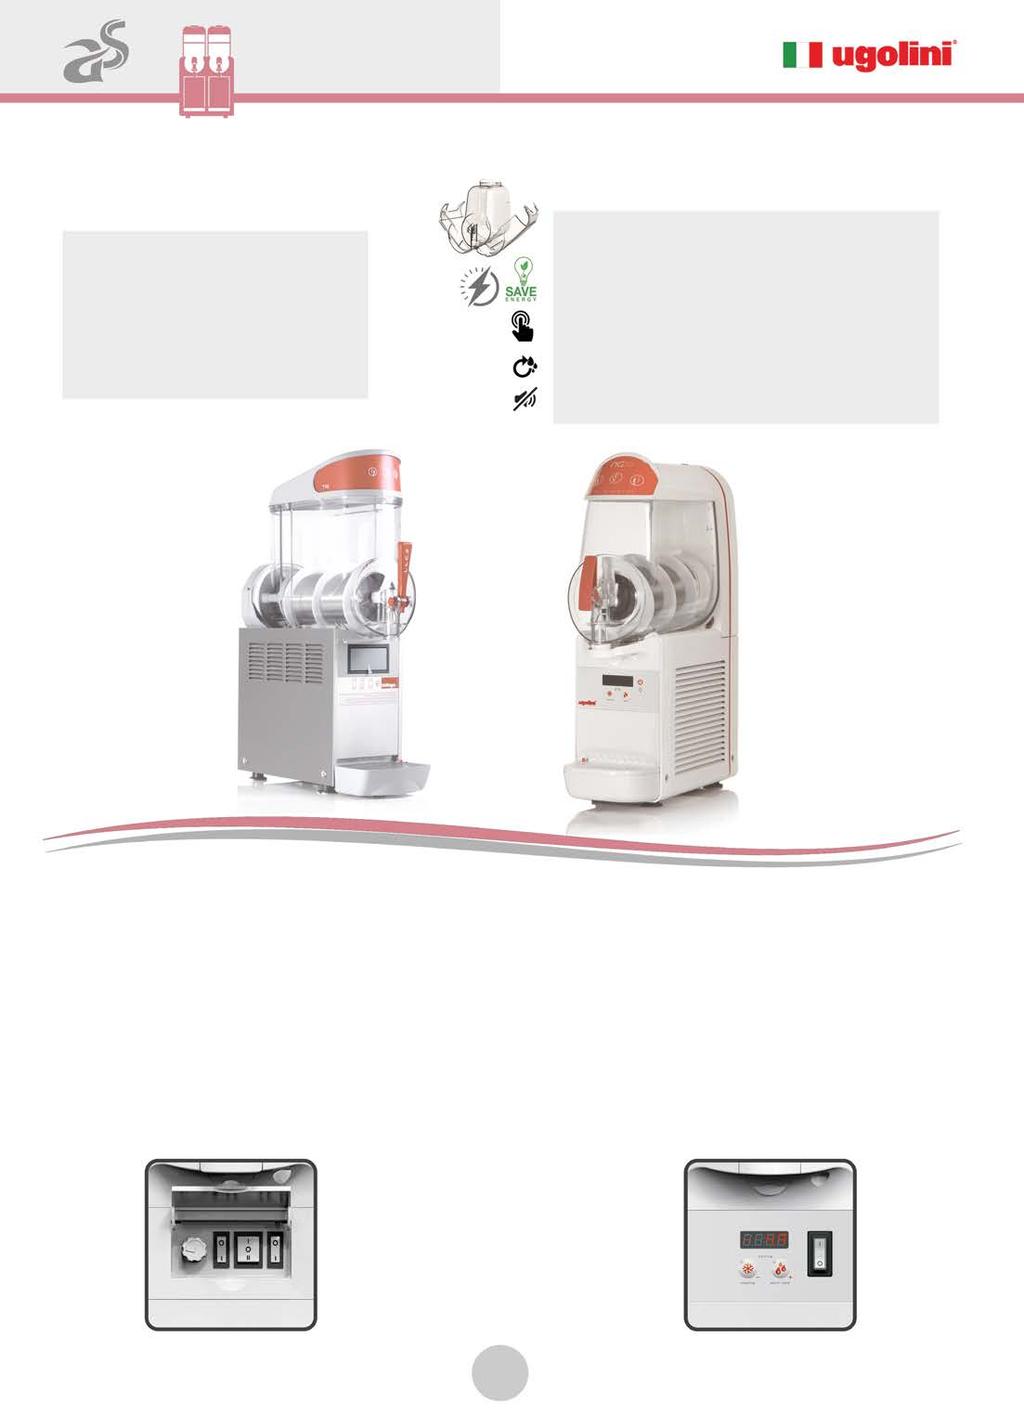 Γρανιτομηχανές Γρανιτομηχανές Σειρά ΜΤ & Mini Αναλογικός πίνακας με επιλογή Start/ Stop ή Συντήρηση Ρυθμιζόμενος θερμοστάτης/κάδο Χειροκίνητη ρύθμιση της πυκνότητας Χαμηλή κατανάλωση ρεύματος Χαμηλό